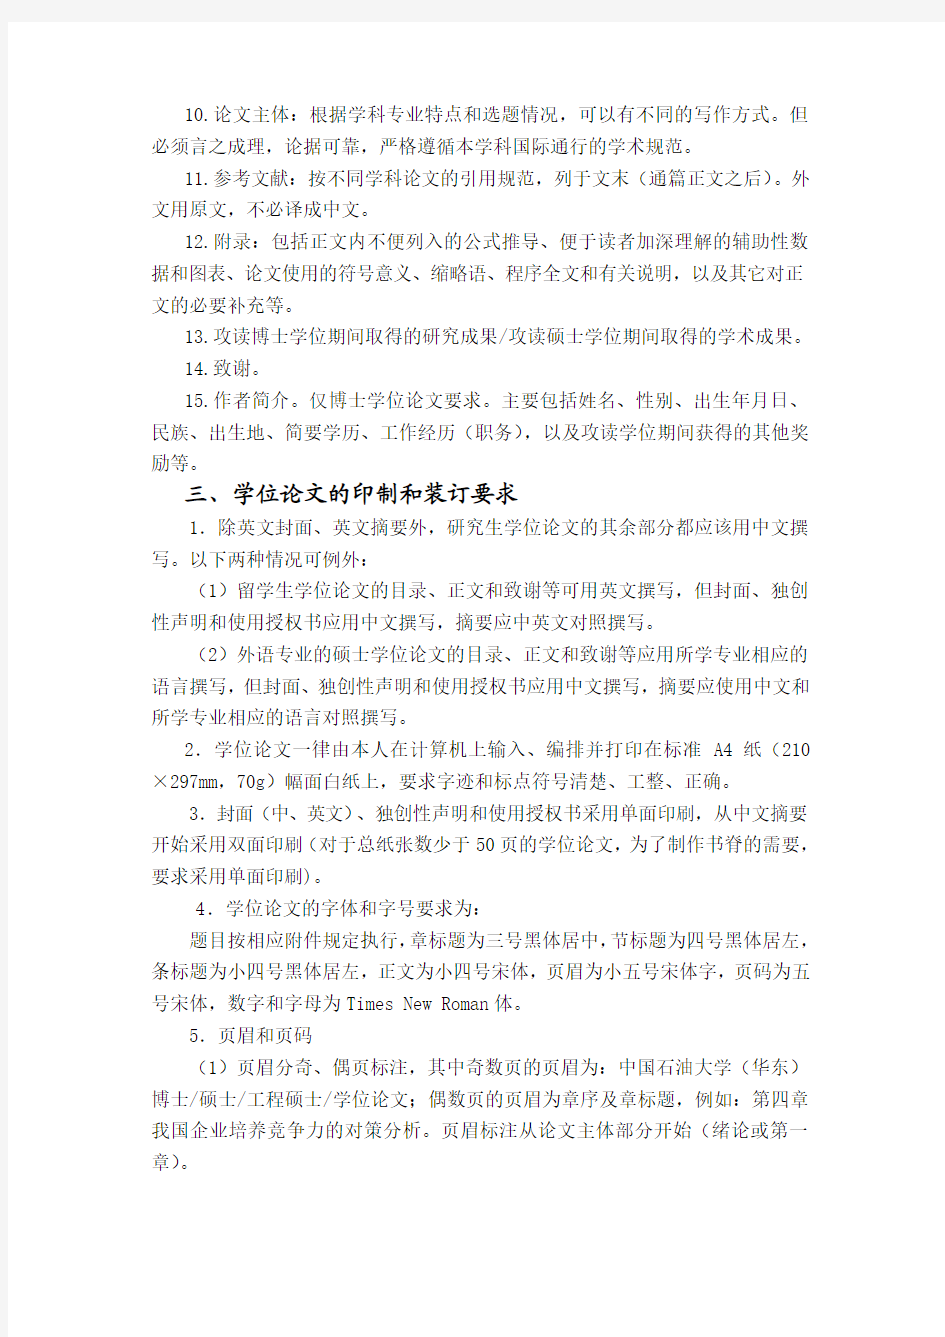 中国石油大学(华东)研究生学位论文书写基本要求